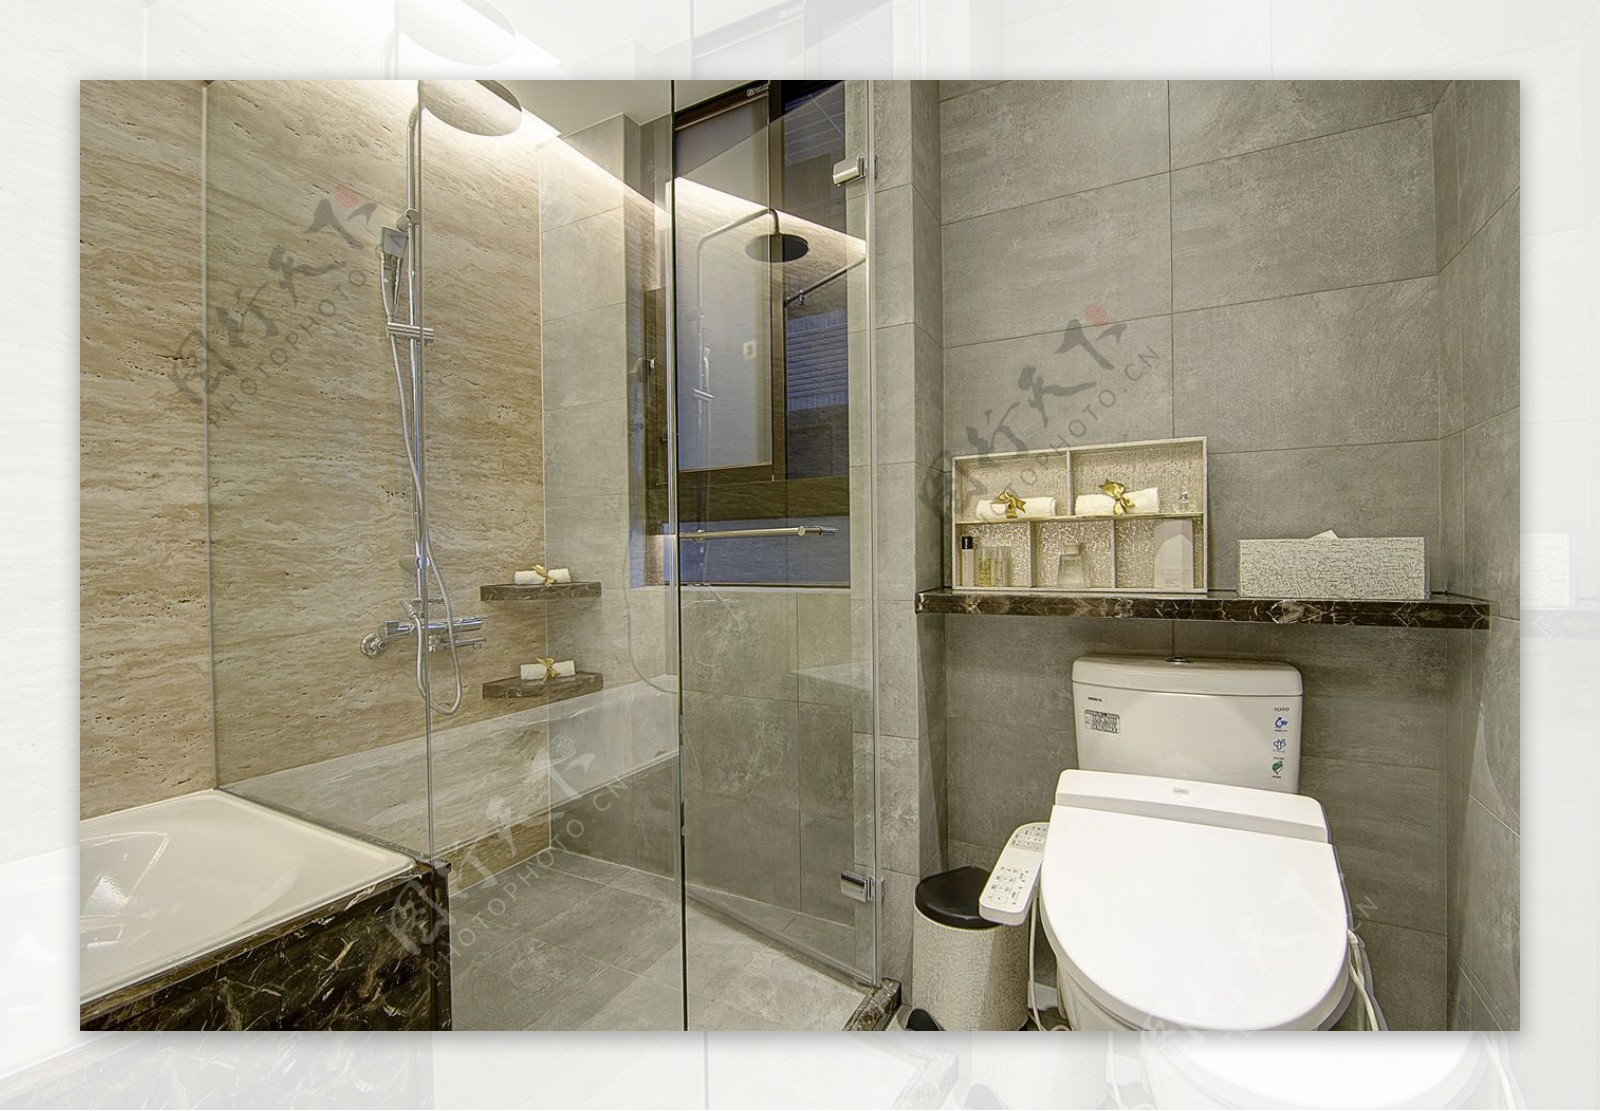 现代简约设计浴室效果图